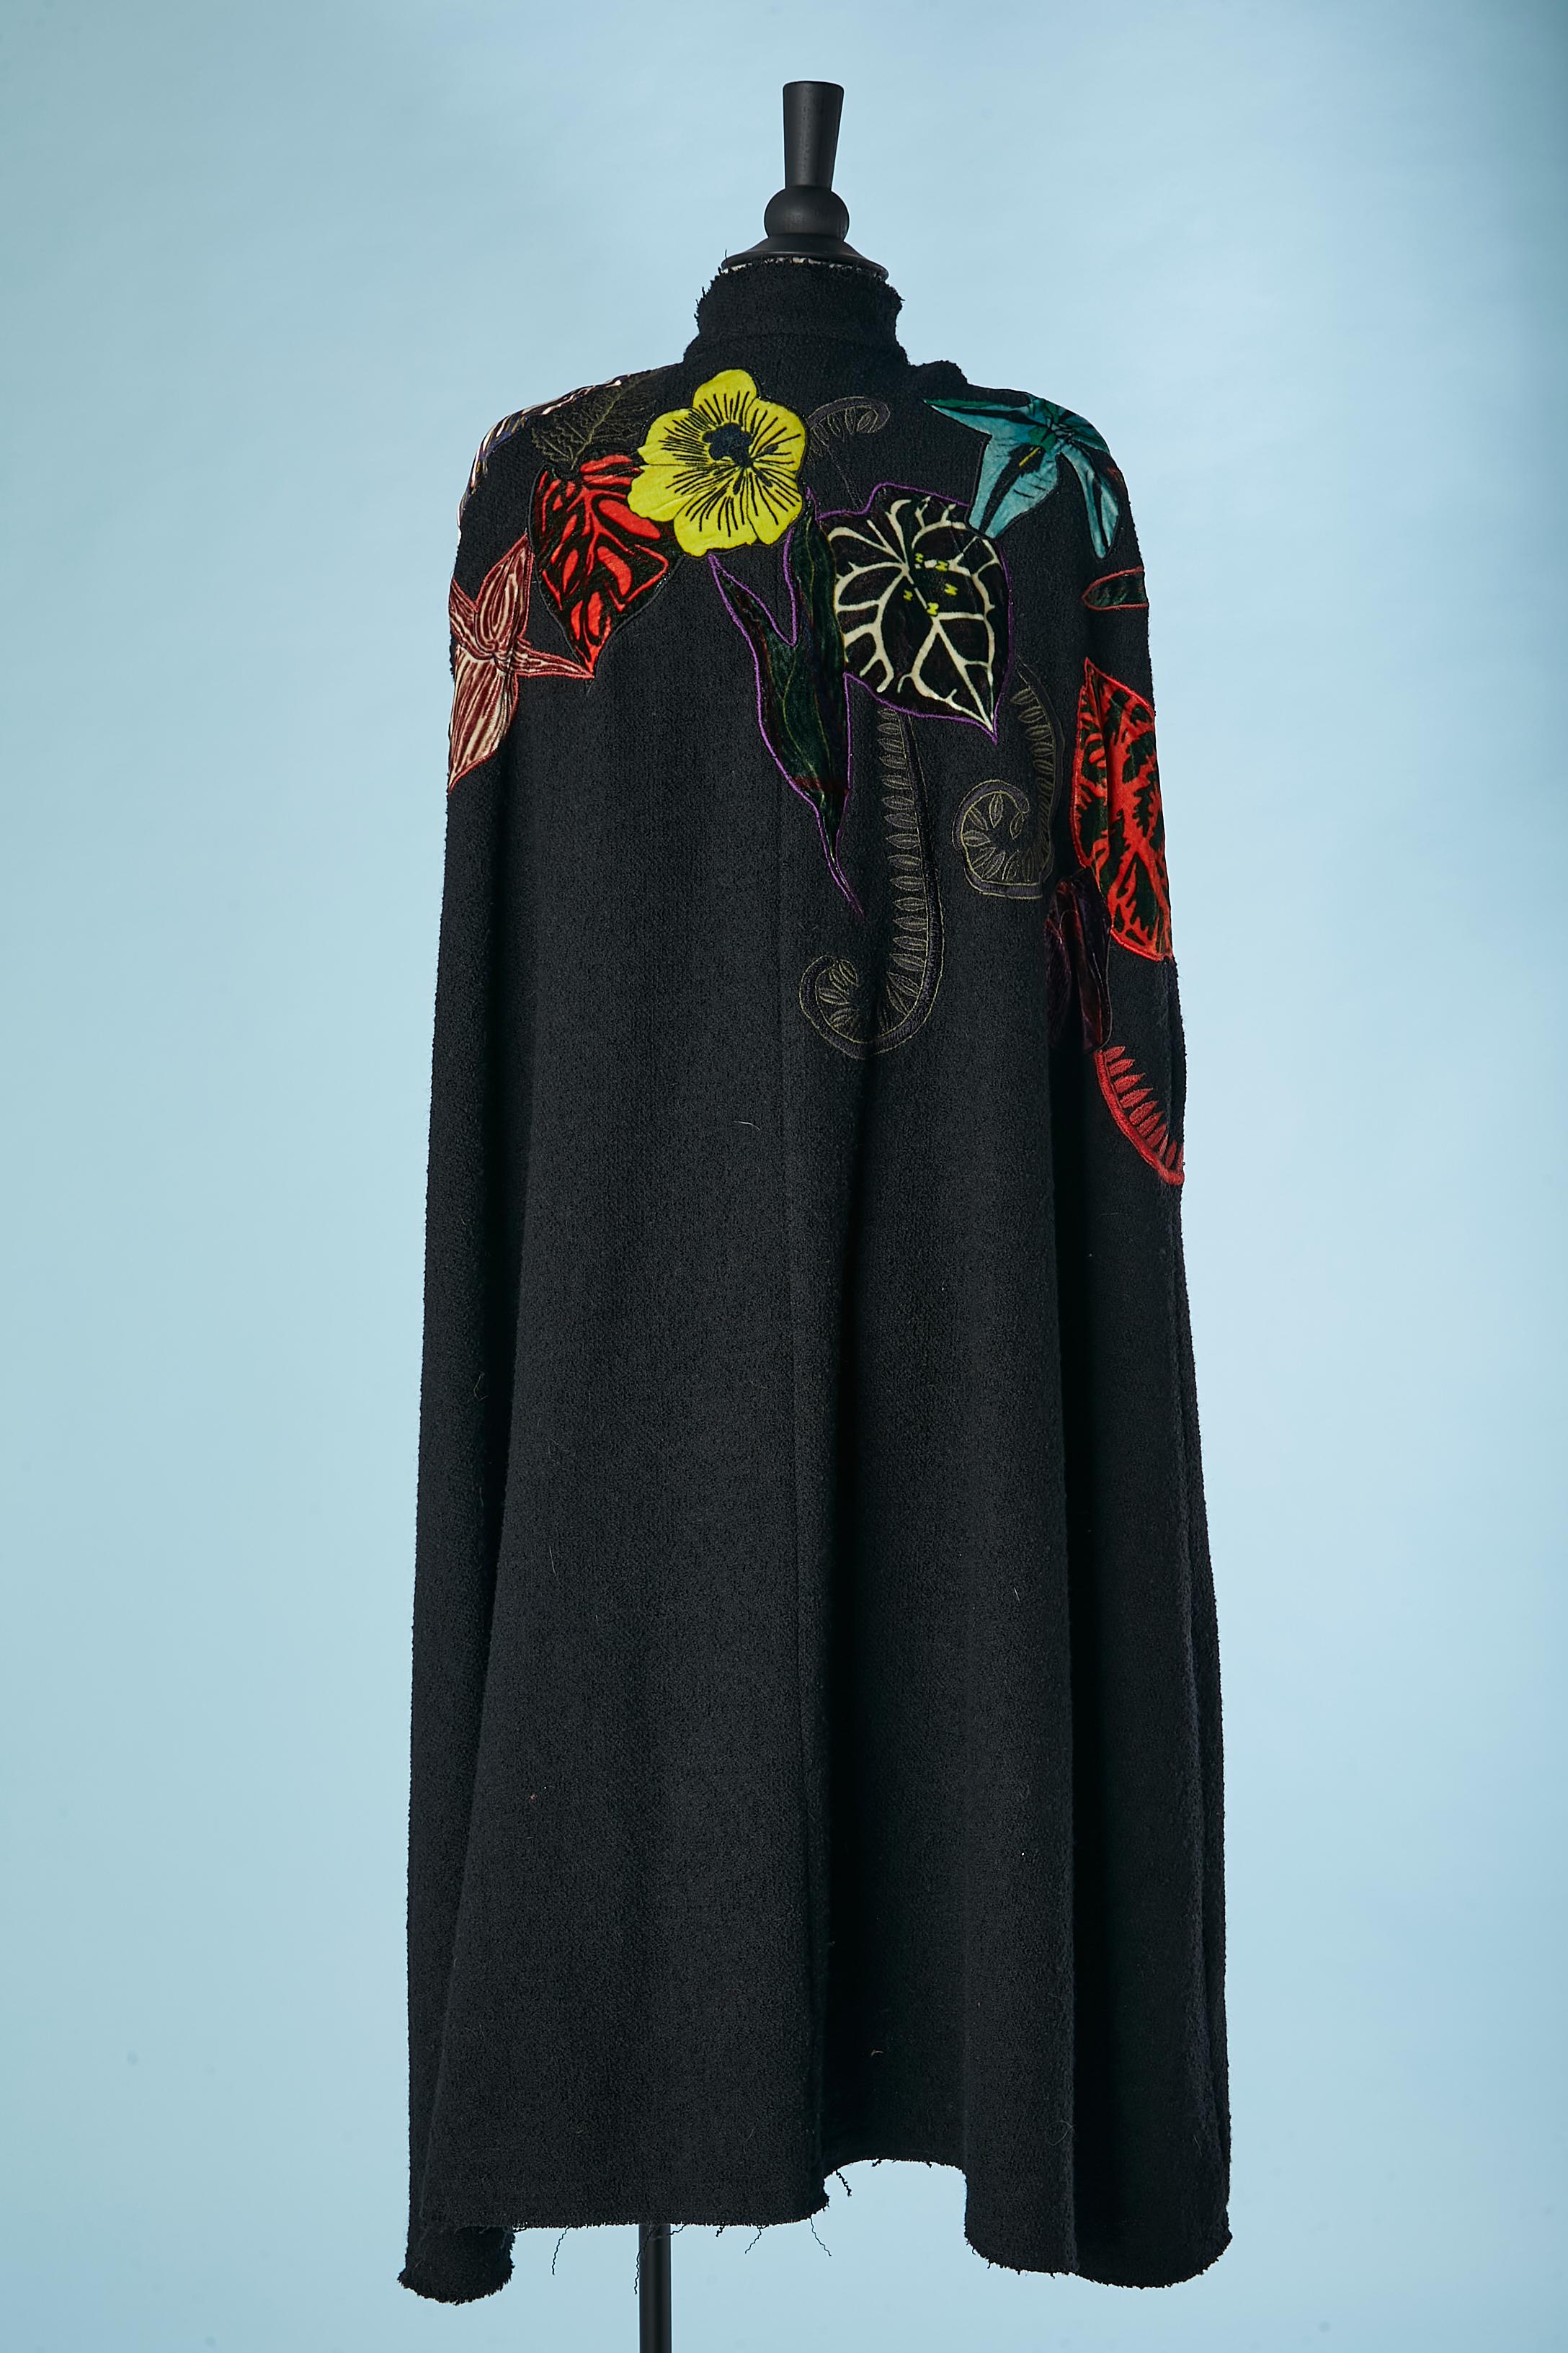 Black wool cape with velvet flowers appliqué Mimi Liberté design by Michel Klein For Sale 1